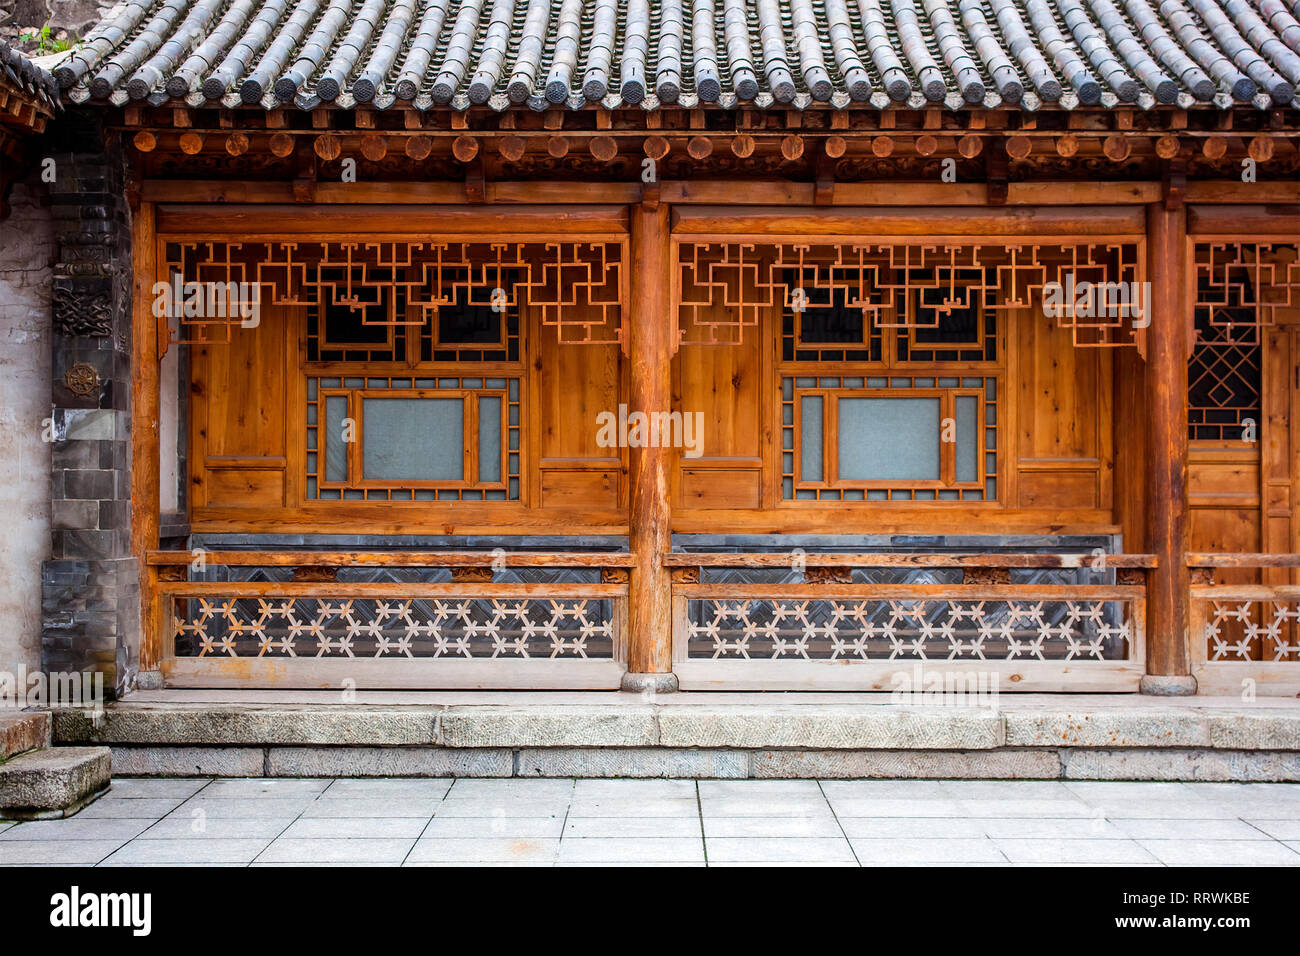 L'architecture chinoise traditionnelle en bois d'une Storie Chambre. Cour intérieure d'un bâtiment rénové Oriental. Détails sculptés de bois. Banque D'Images